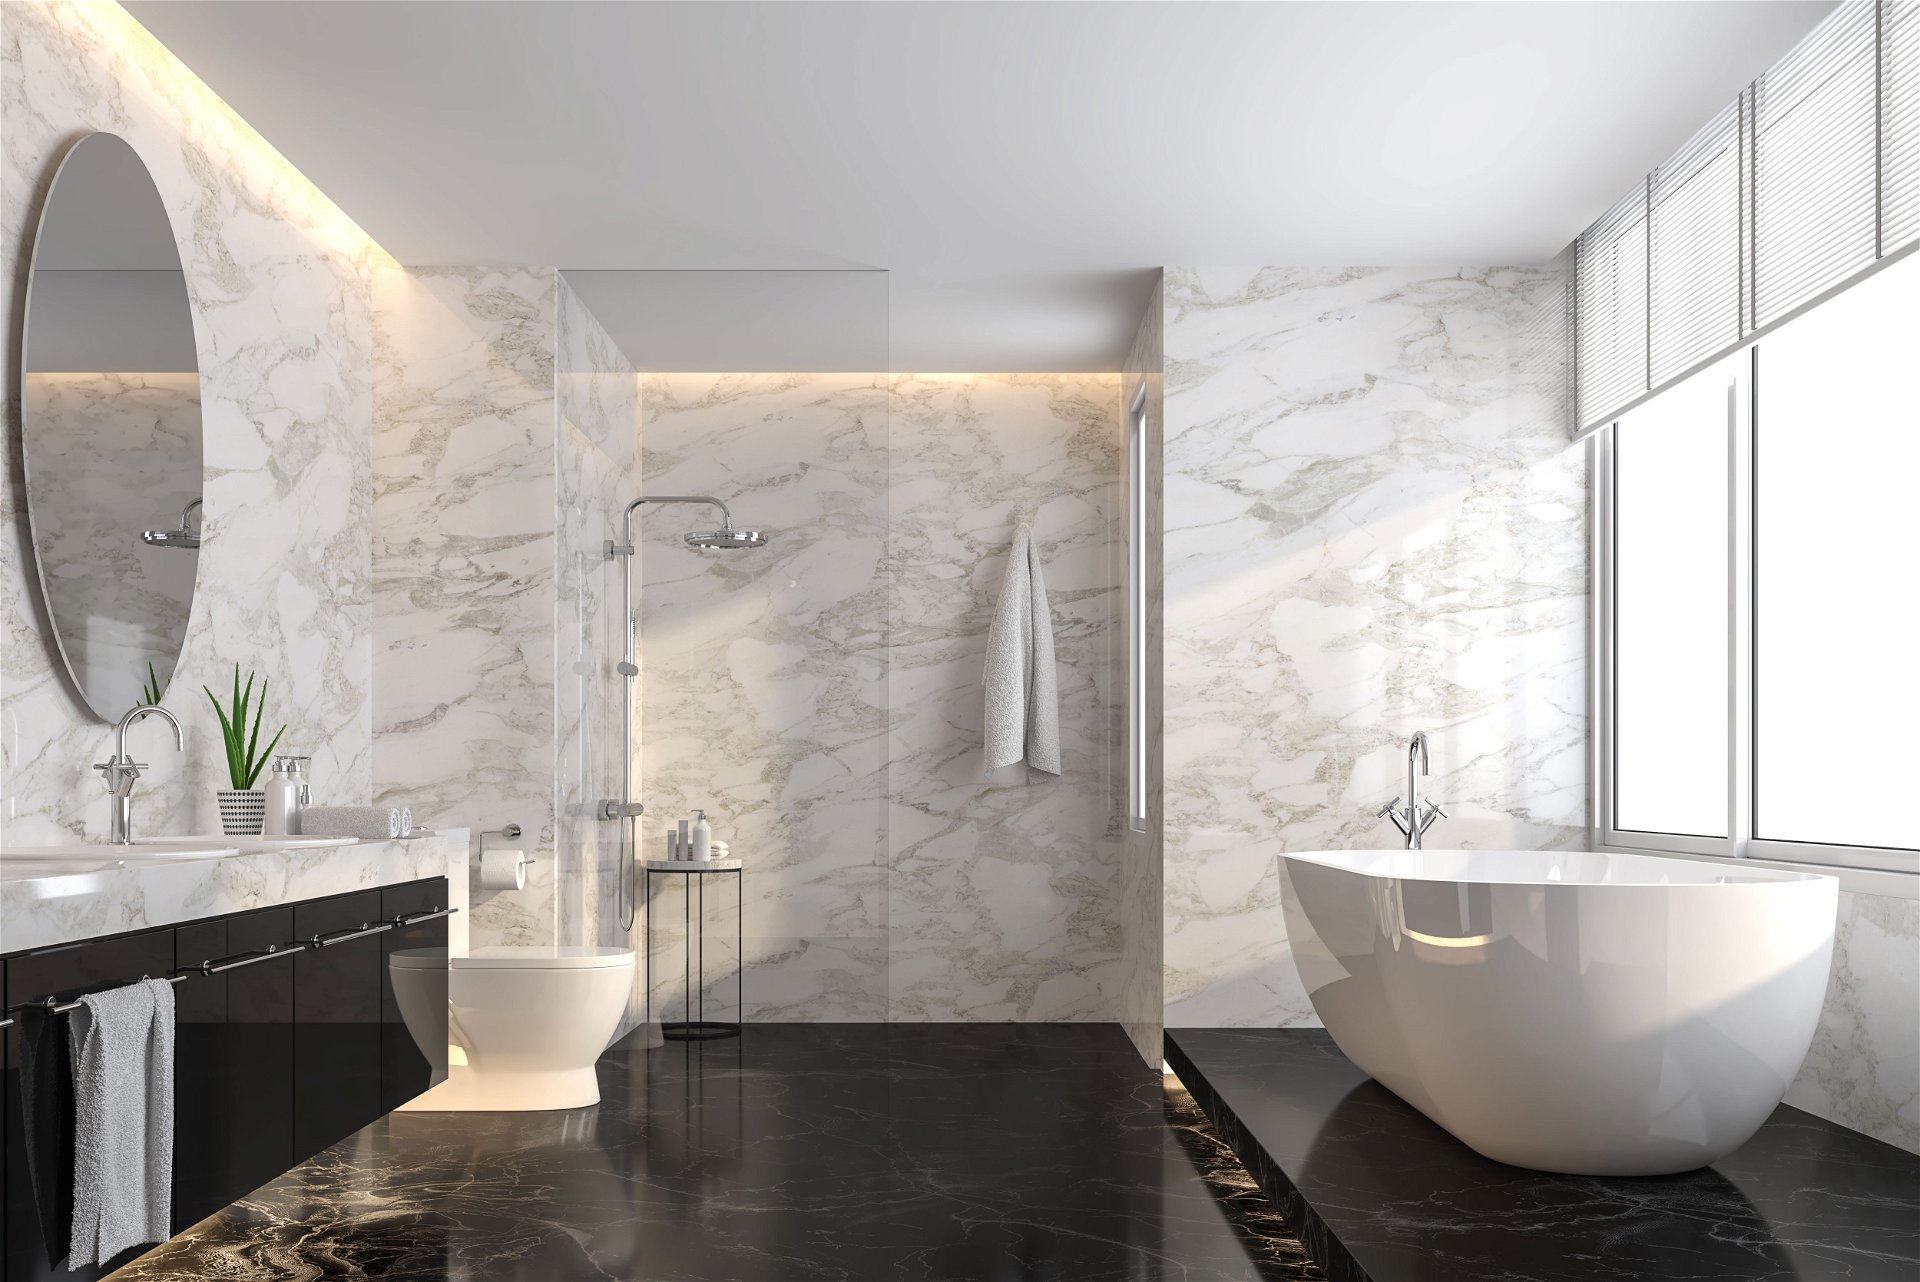 Auch ein Badezimmer in Schwarz-Weiß wirkt harmonisch und strahlt Ruhe aus.